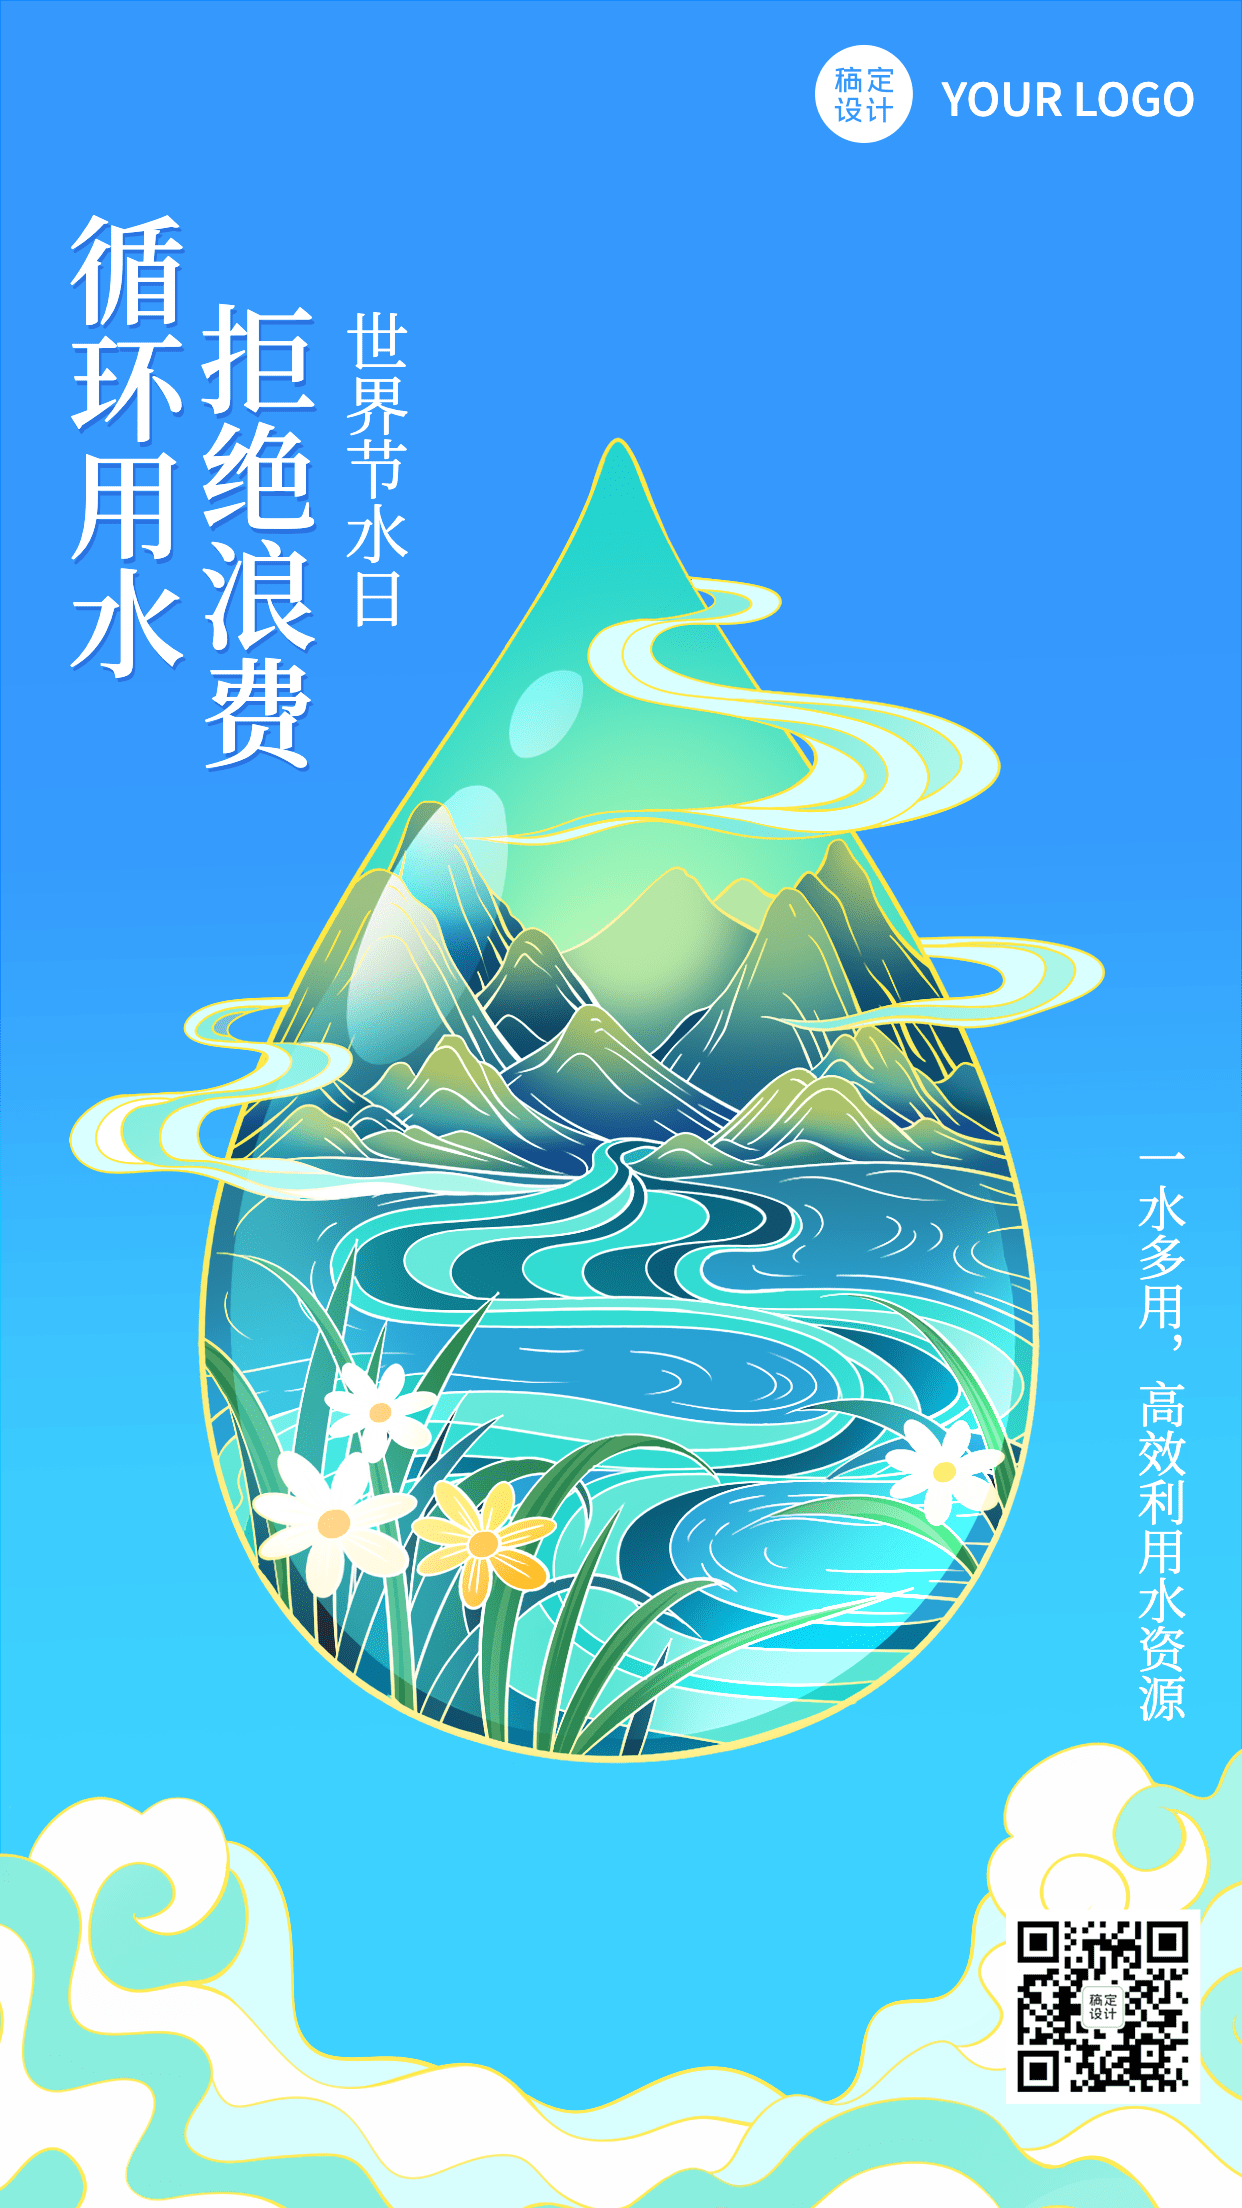 世界节水日节日宣传插画手机海报